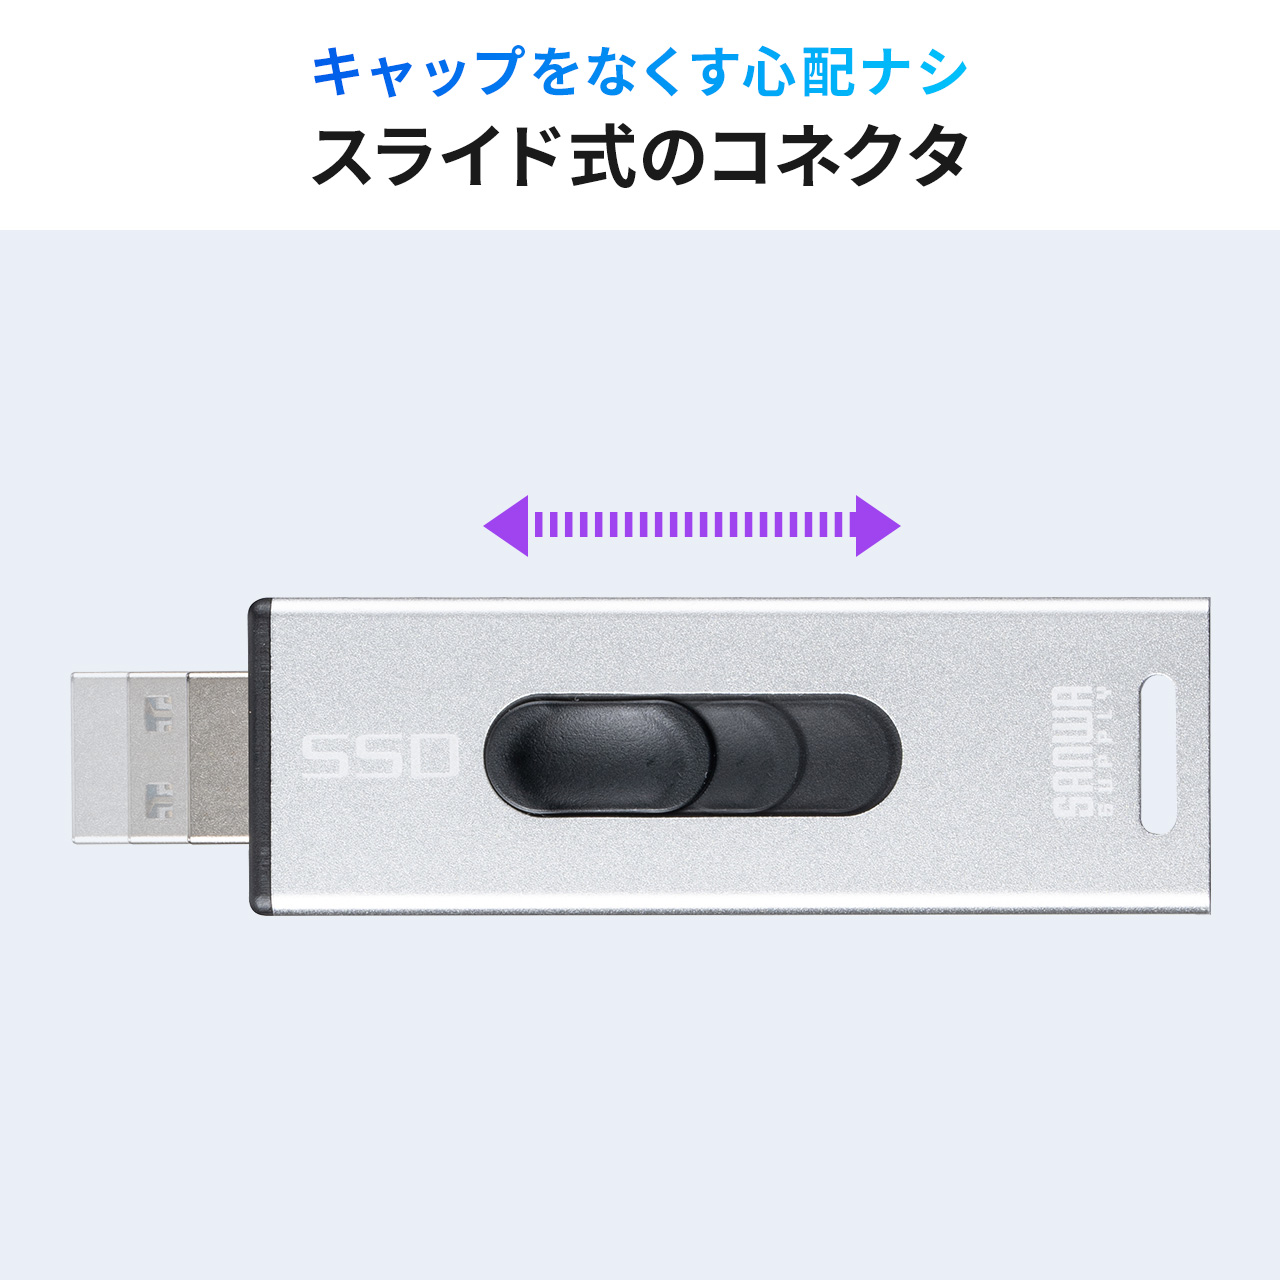 スティック型SSD 外付け USB3.2 Gen2 小型 1TB テレビ録画 ゲーム機 